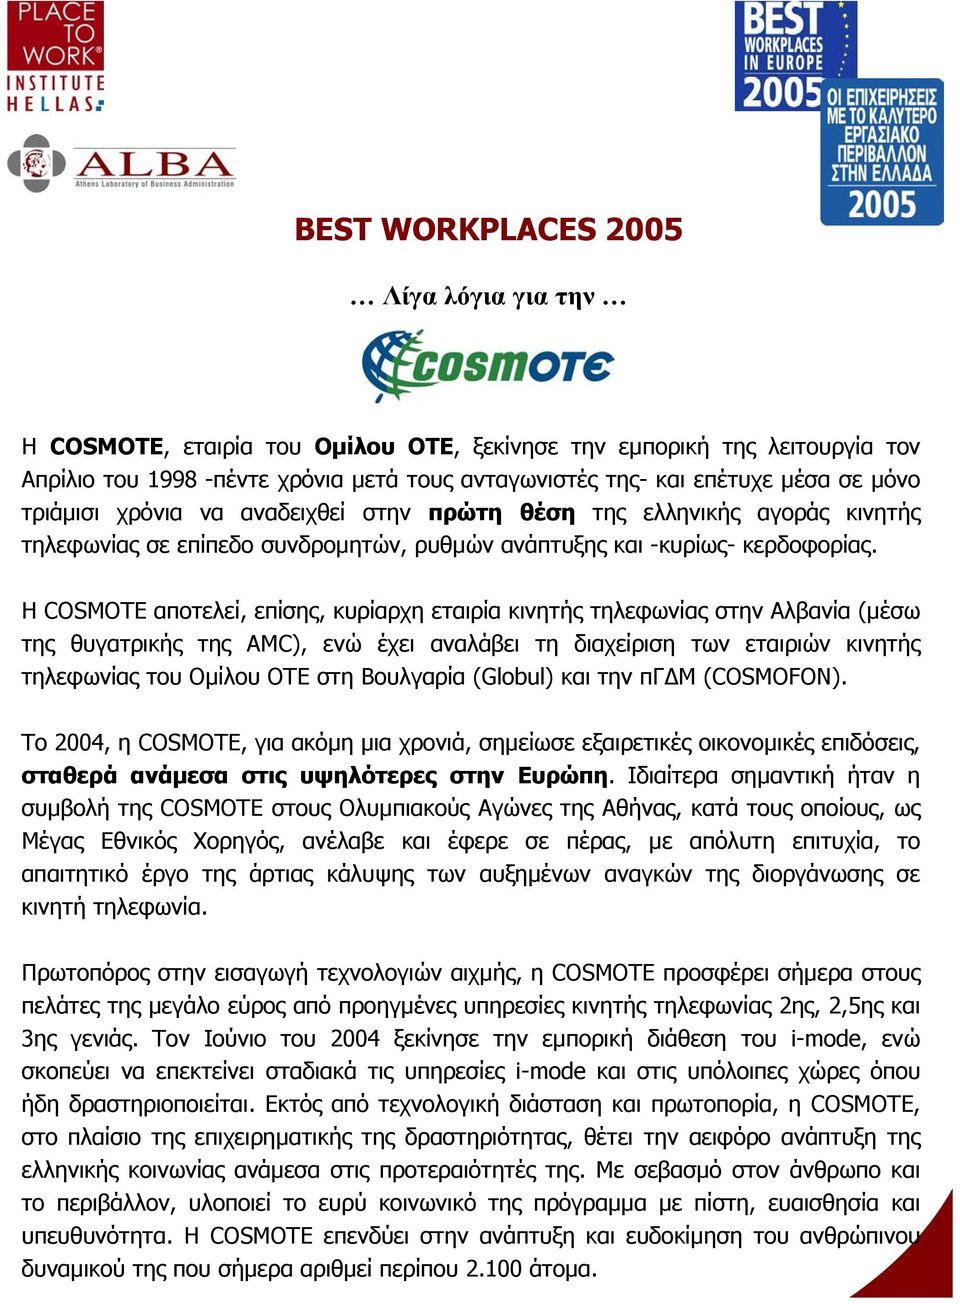 Η COSMOTE αποτελεί, επίσης, κυρίαρχη εταιρία κινητής τηλεφωνίας στην Αλβανία (µέσω της θυγατρικής της AMC), ενώ έχει αναλάβει τη διαχείριση των εταιριών κινητής τηλεφωνίας του Οµίλου ΟΤΕ στη